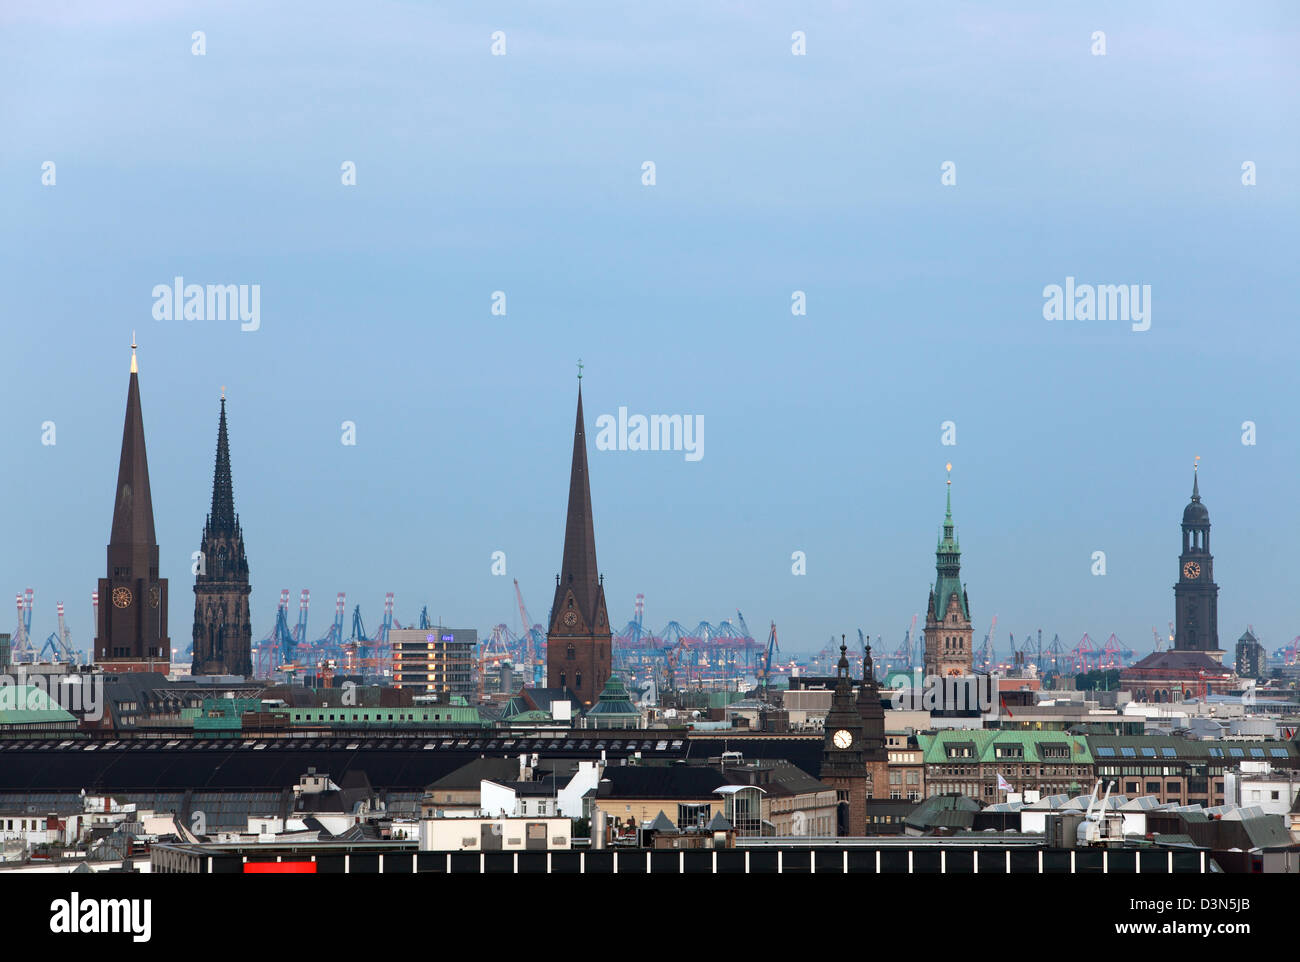 Hamburg, Germany, City Facts at dusk Stock Photo